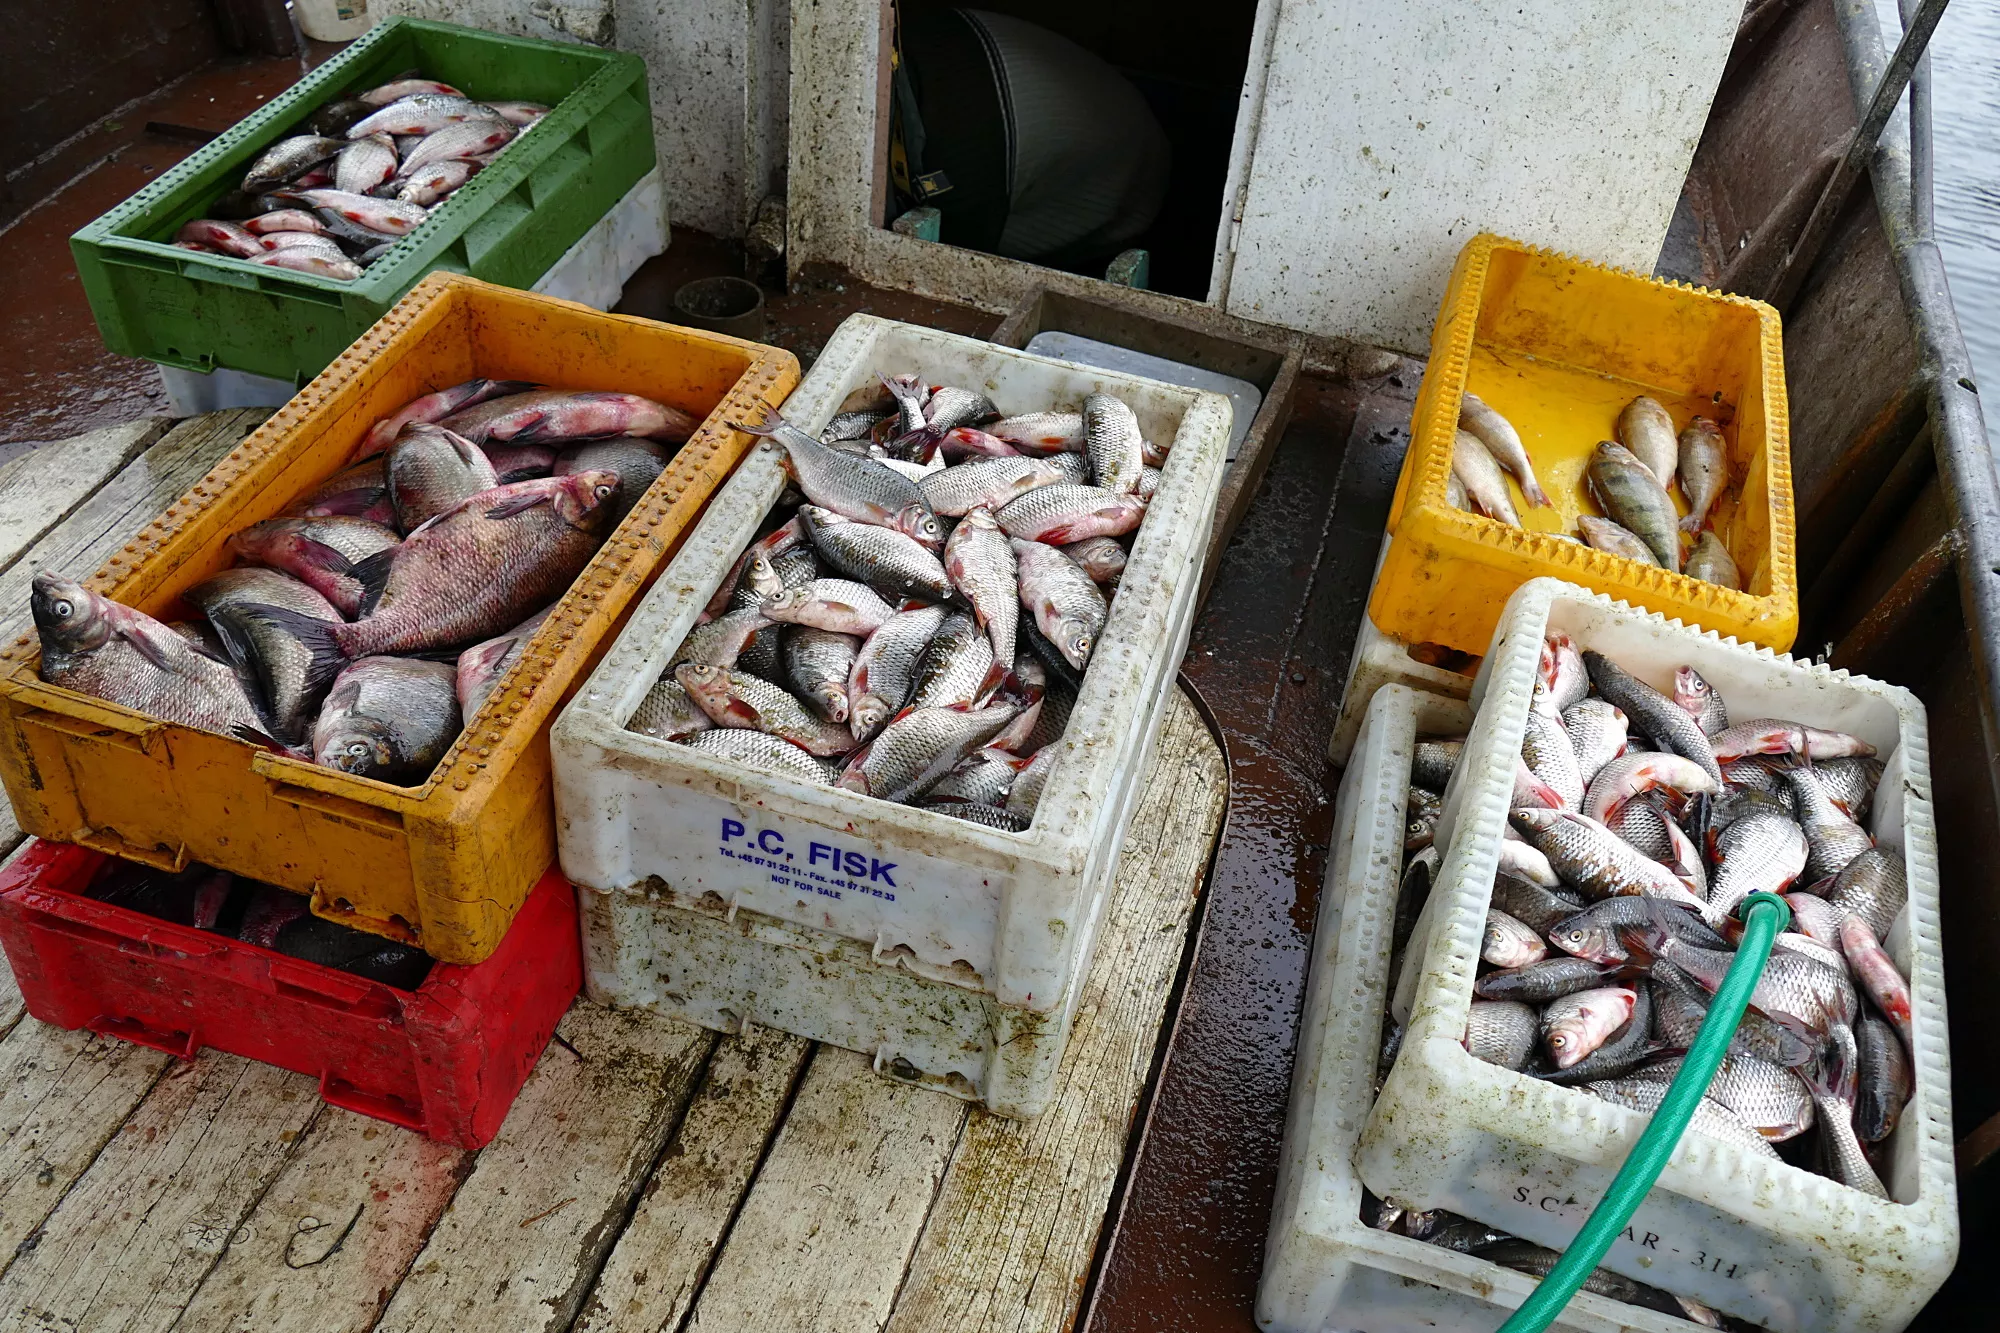 Sugauta apie 200 kg žuvų: 5 standartinės dėžės kuojų, 2 tokios pat dėžės karšių ir dar šiek tiek priegaudos.